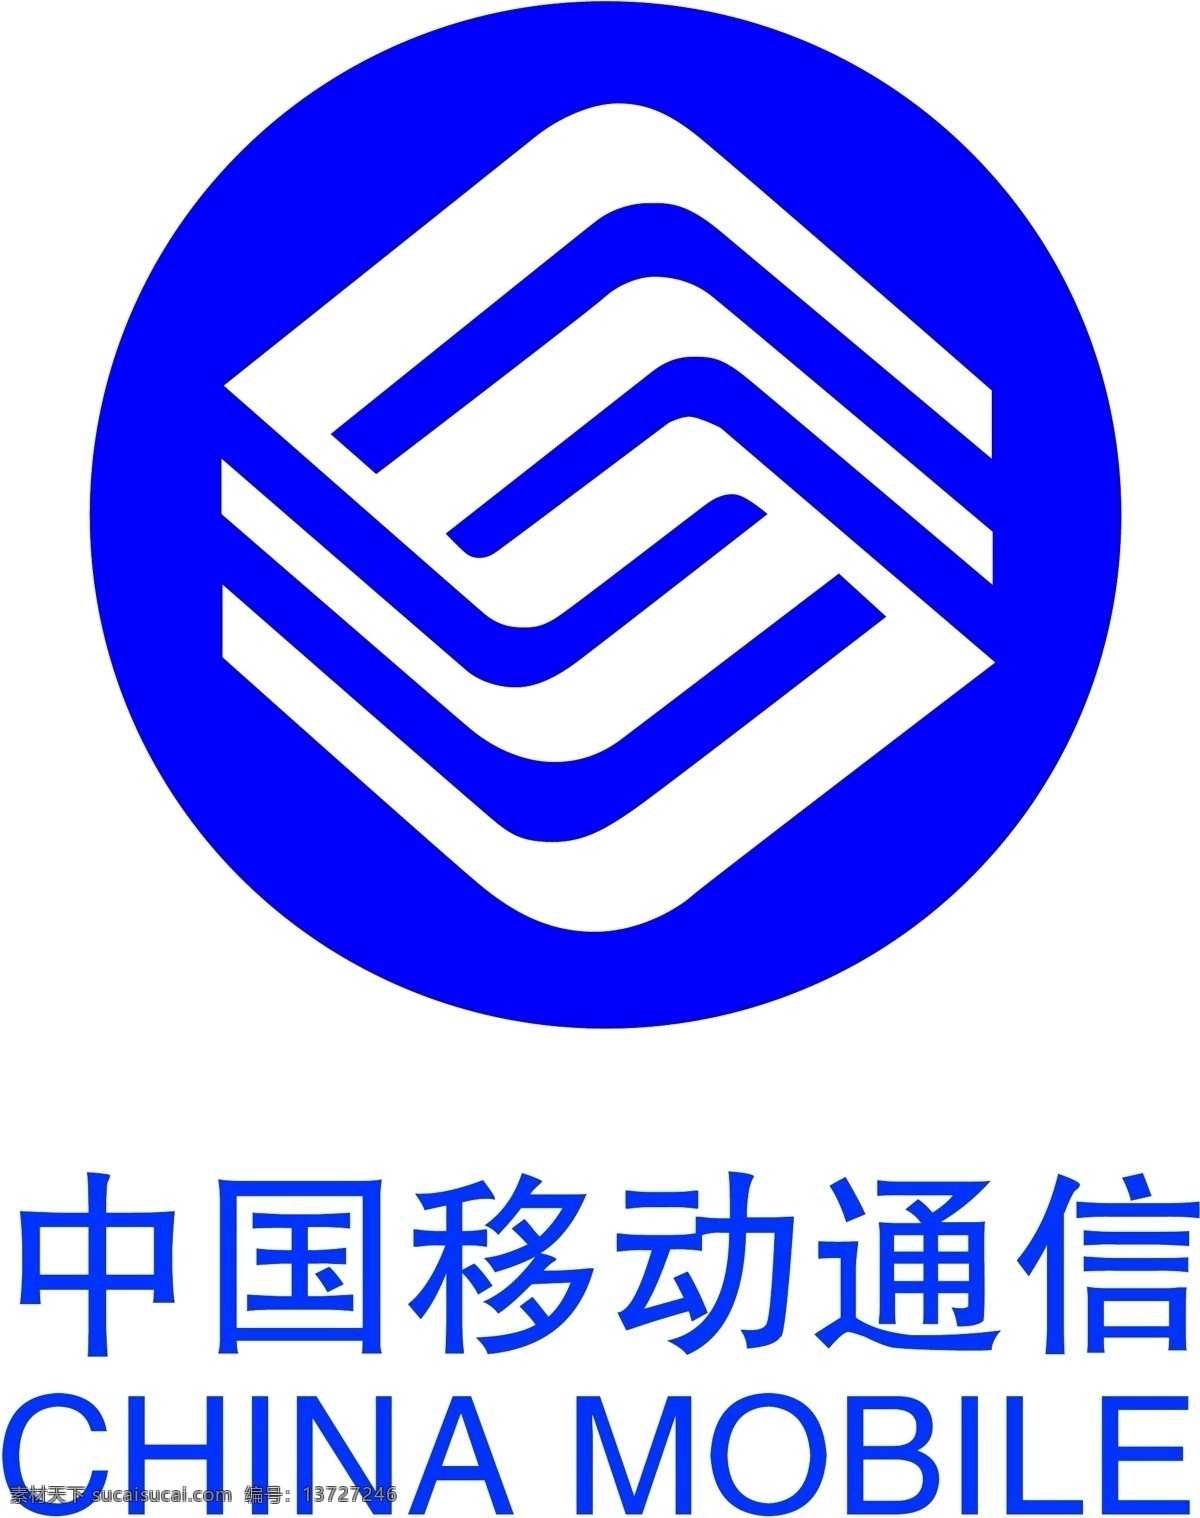 中国移动通信 标志 中国移动 移动标志 经典标志 经典标志设计 大 公司 标志设计 标志大全 企业 logo 标识标志图标 矢量